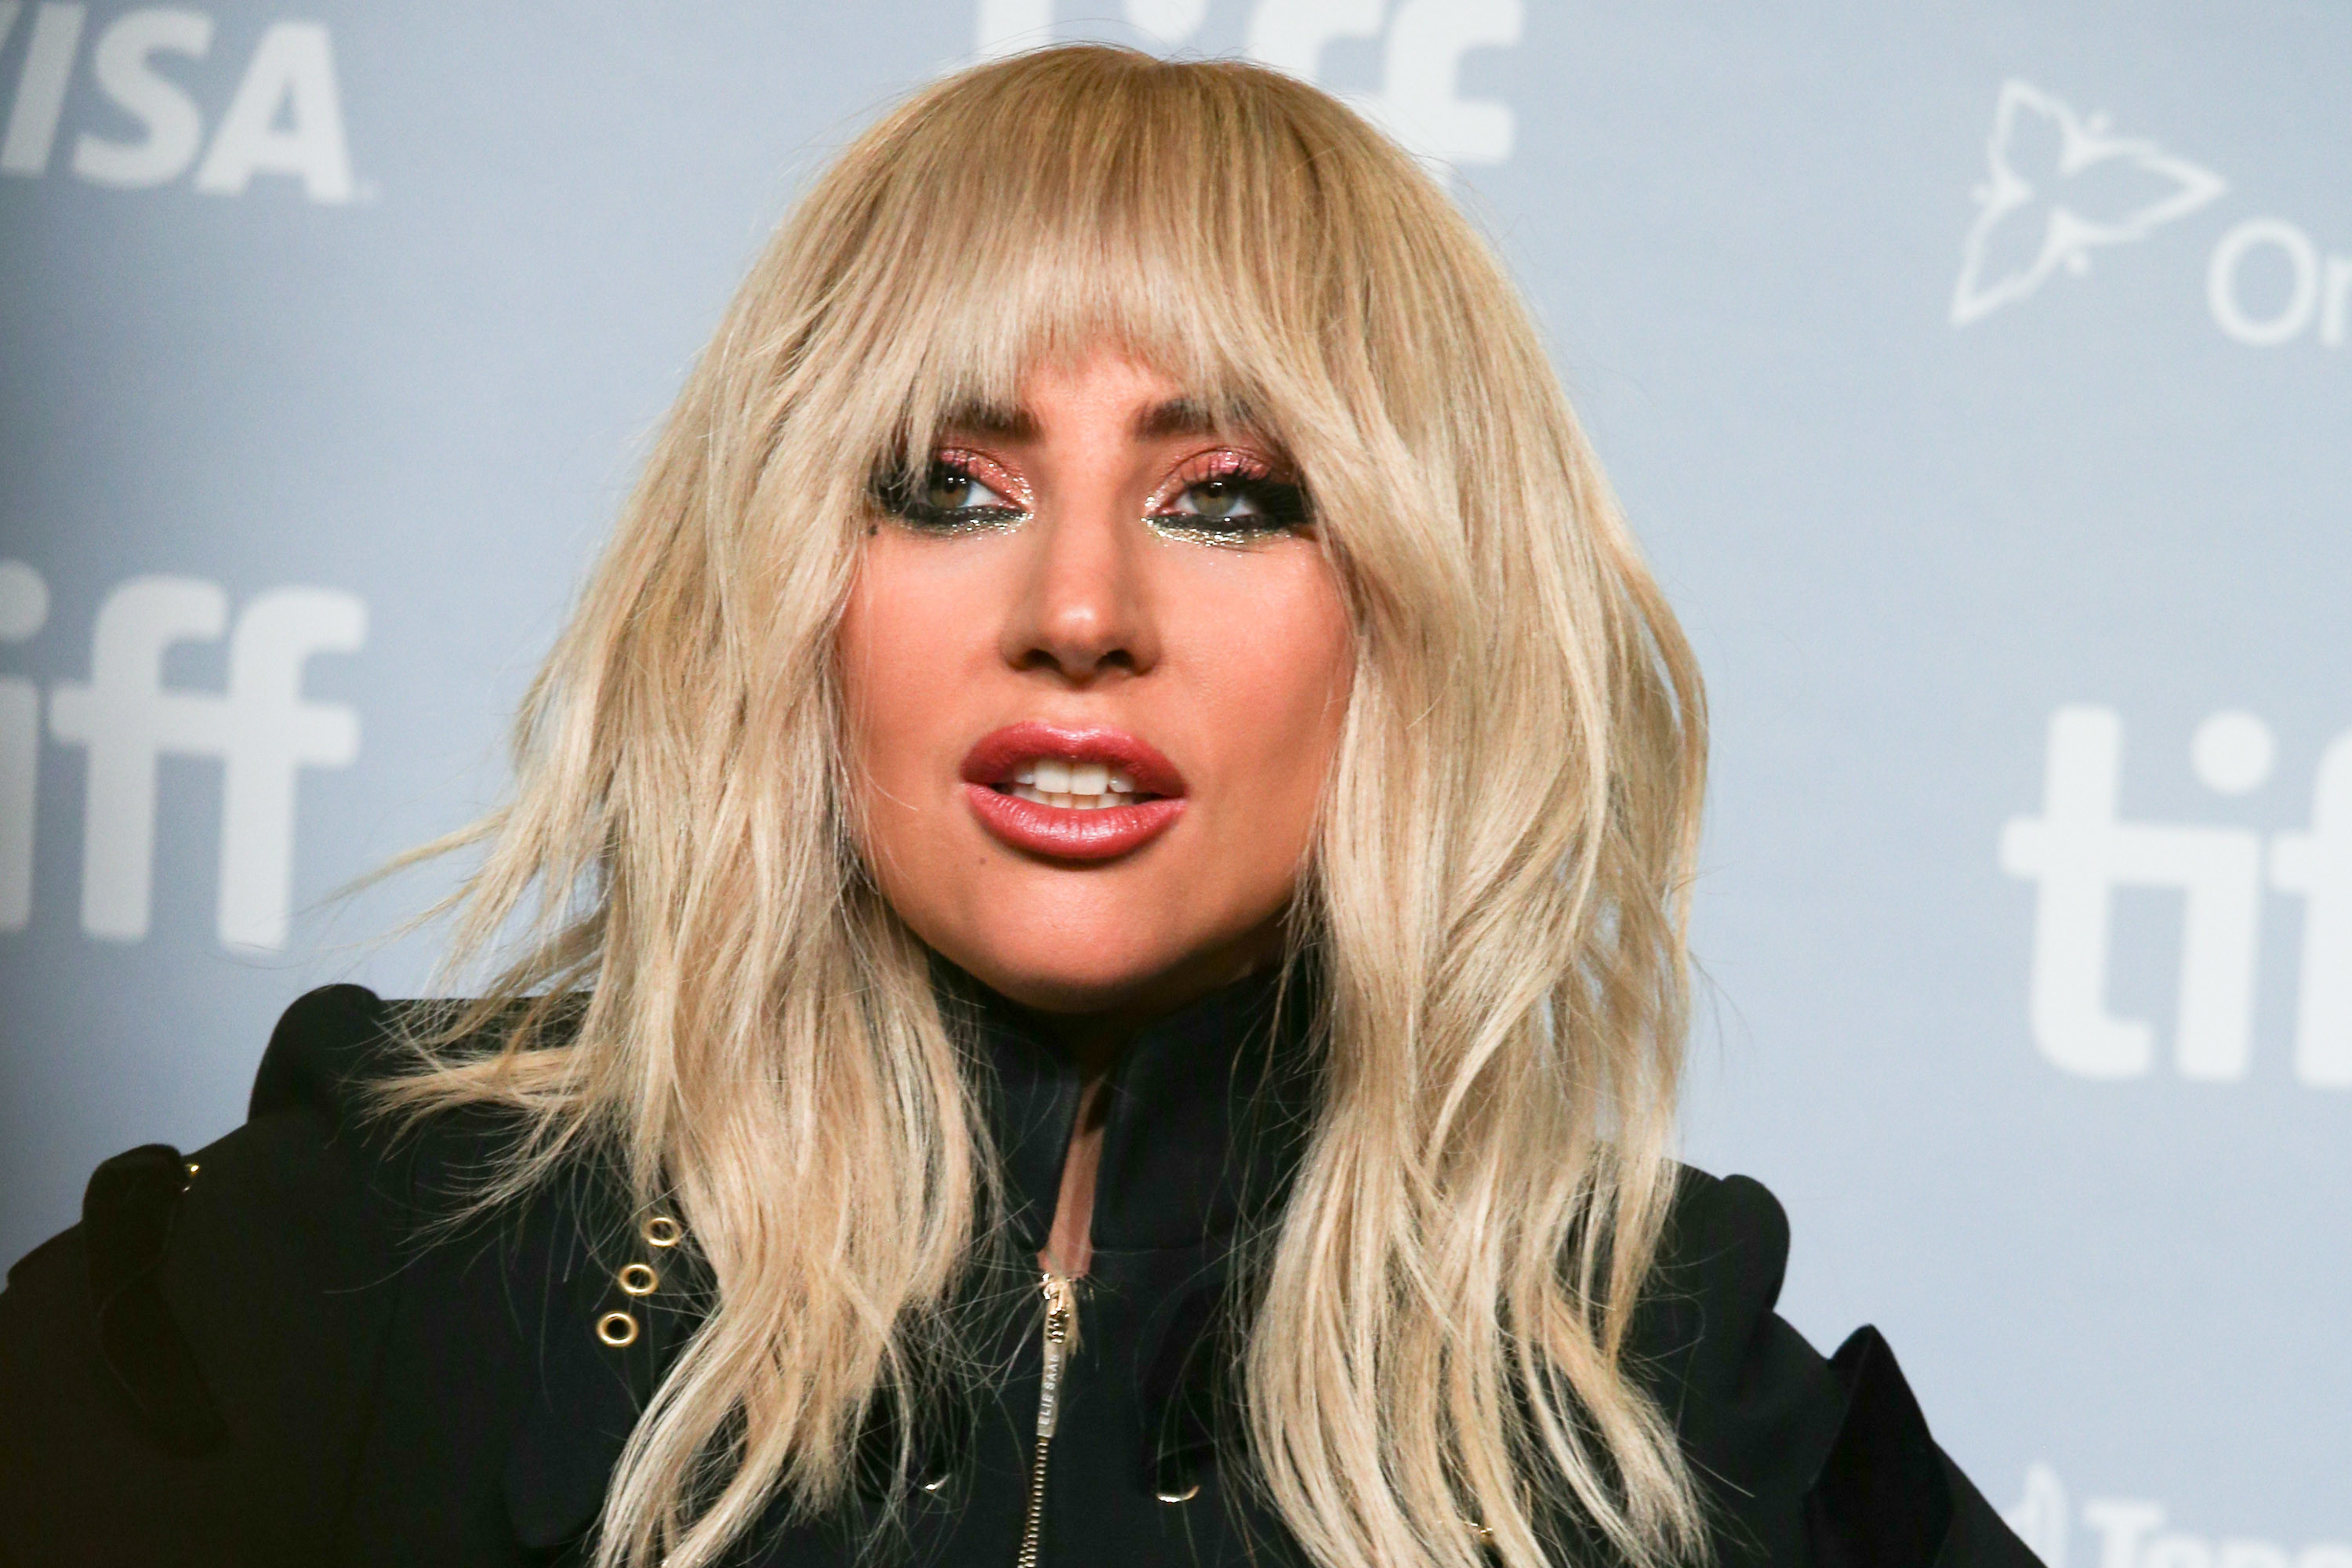 Голая Леди Гага в мусоре стала главным посмешищем недели: фото 18+ - ЗНАЙ ЮА